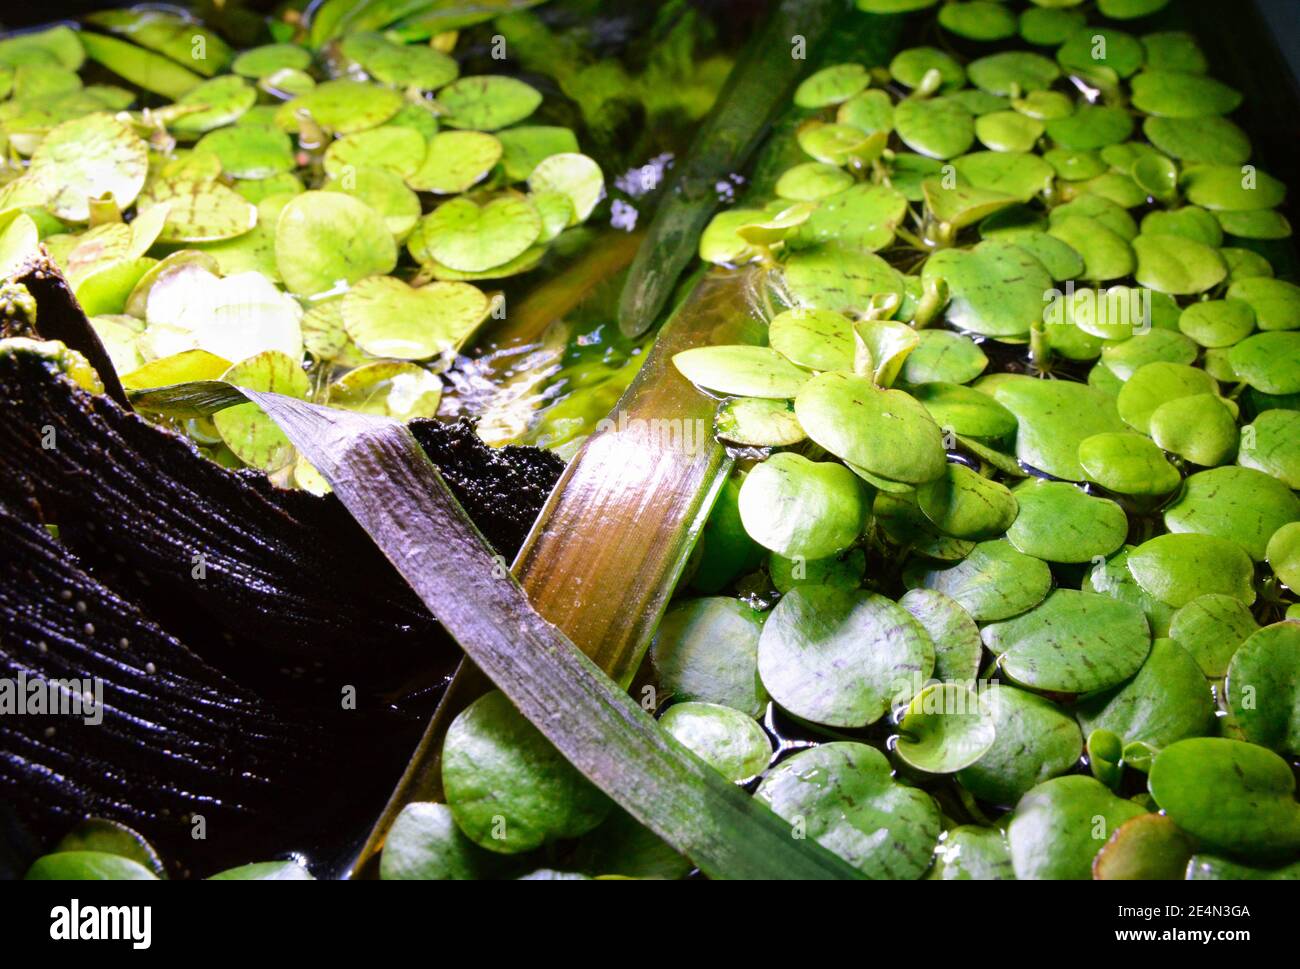 Floating aquarium plant or fish tank, water lily type. Limnobium laevigatum. Stock Photo